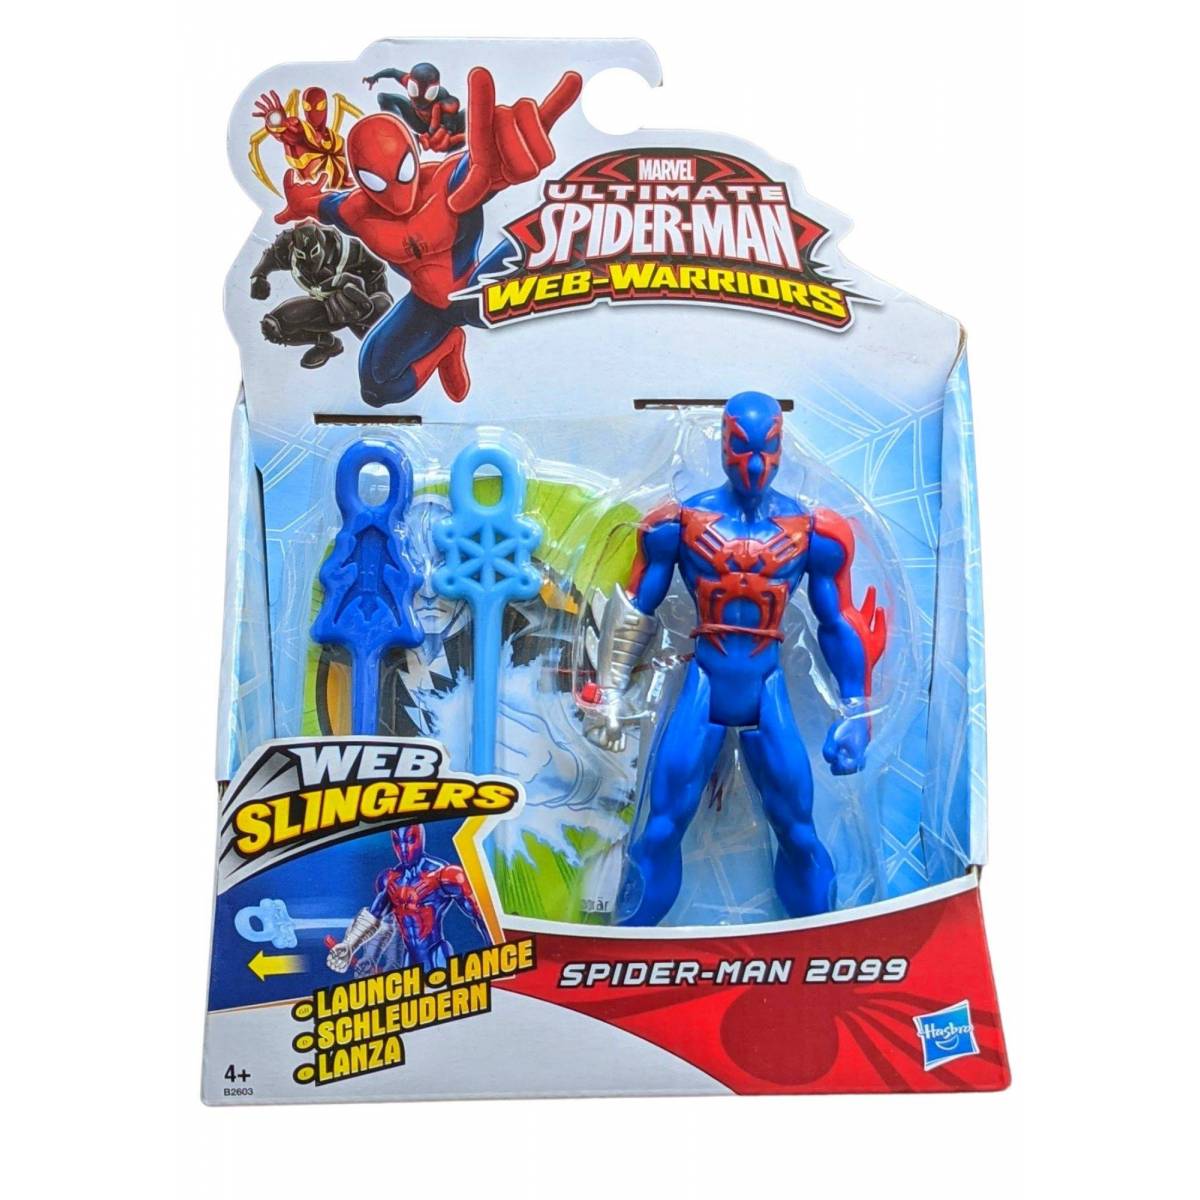 Figurine Spider-Man 2099 Ultimate Spider-Man Web-Warriors - 12 cm